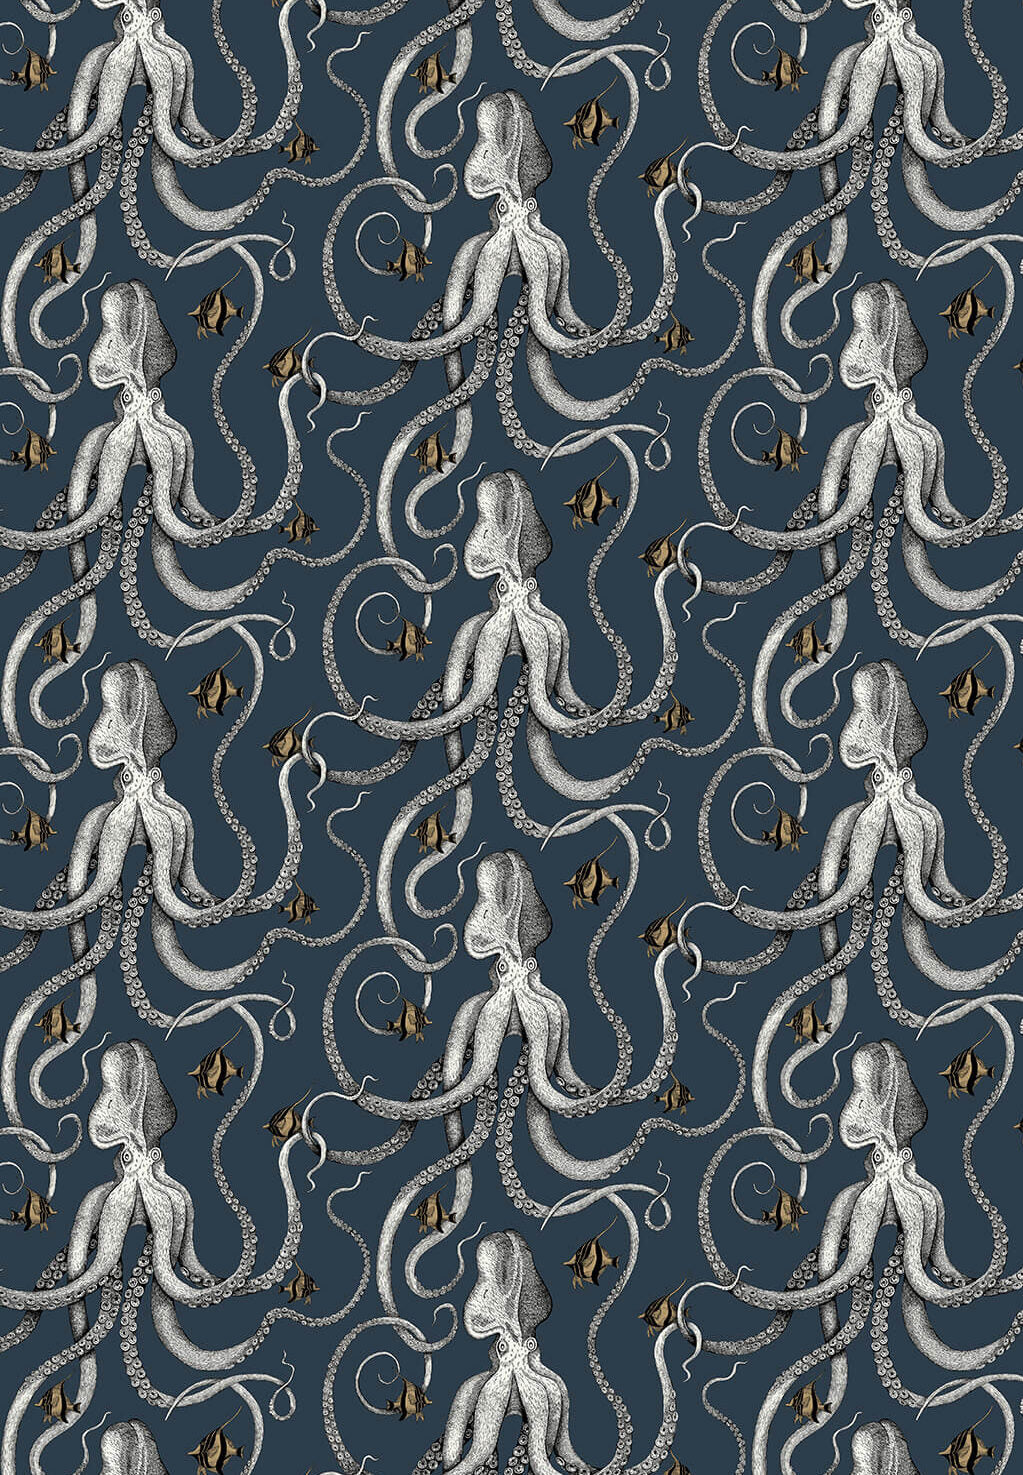 Octopoda Deep Sea Blue Wallpaper